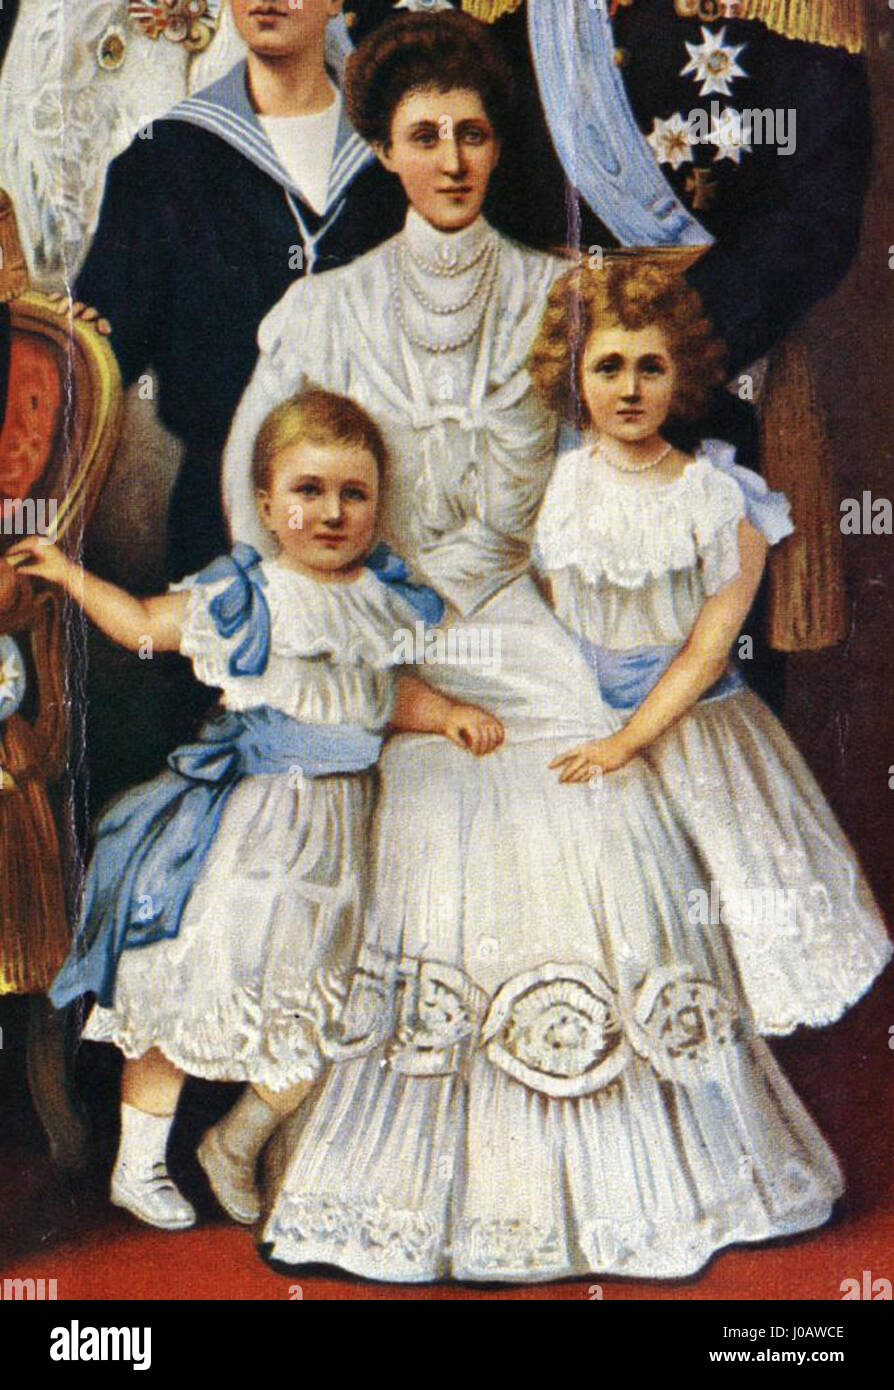 Märtha de Noruega, Ingeborg de Suecia & Margaretha de Dinamarca 1905 Foto de stock